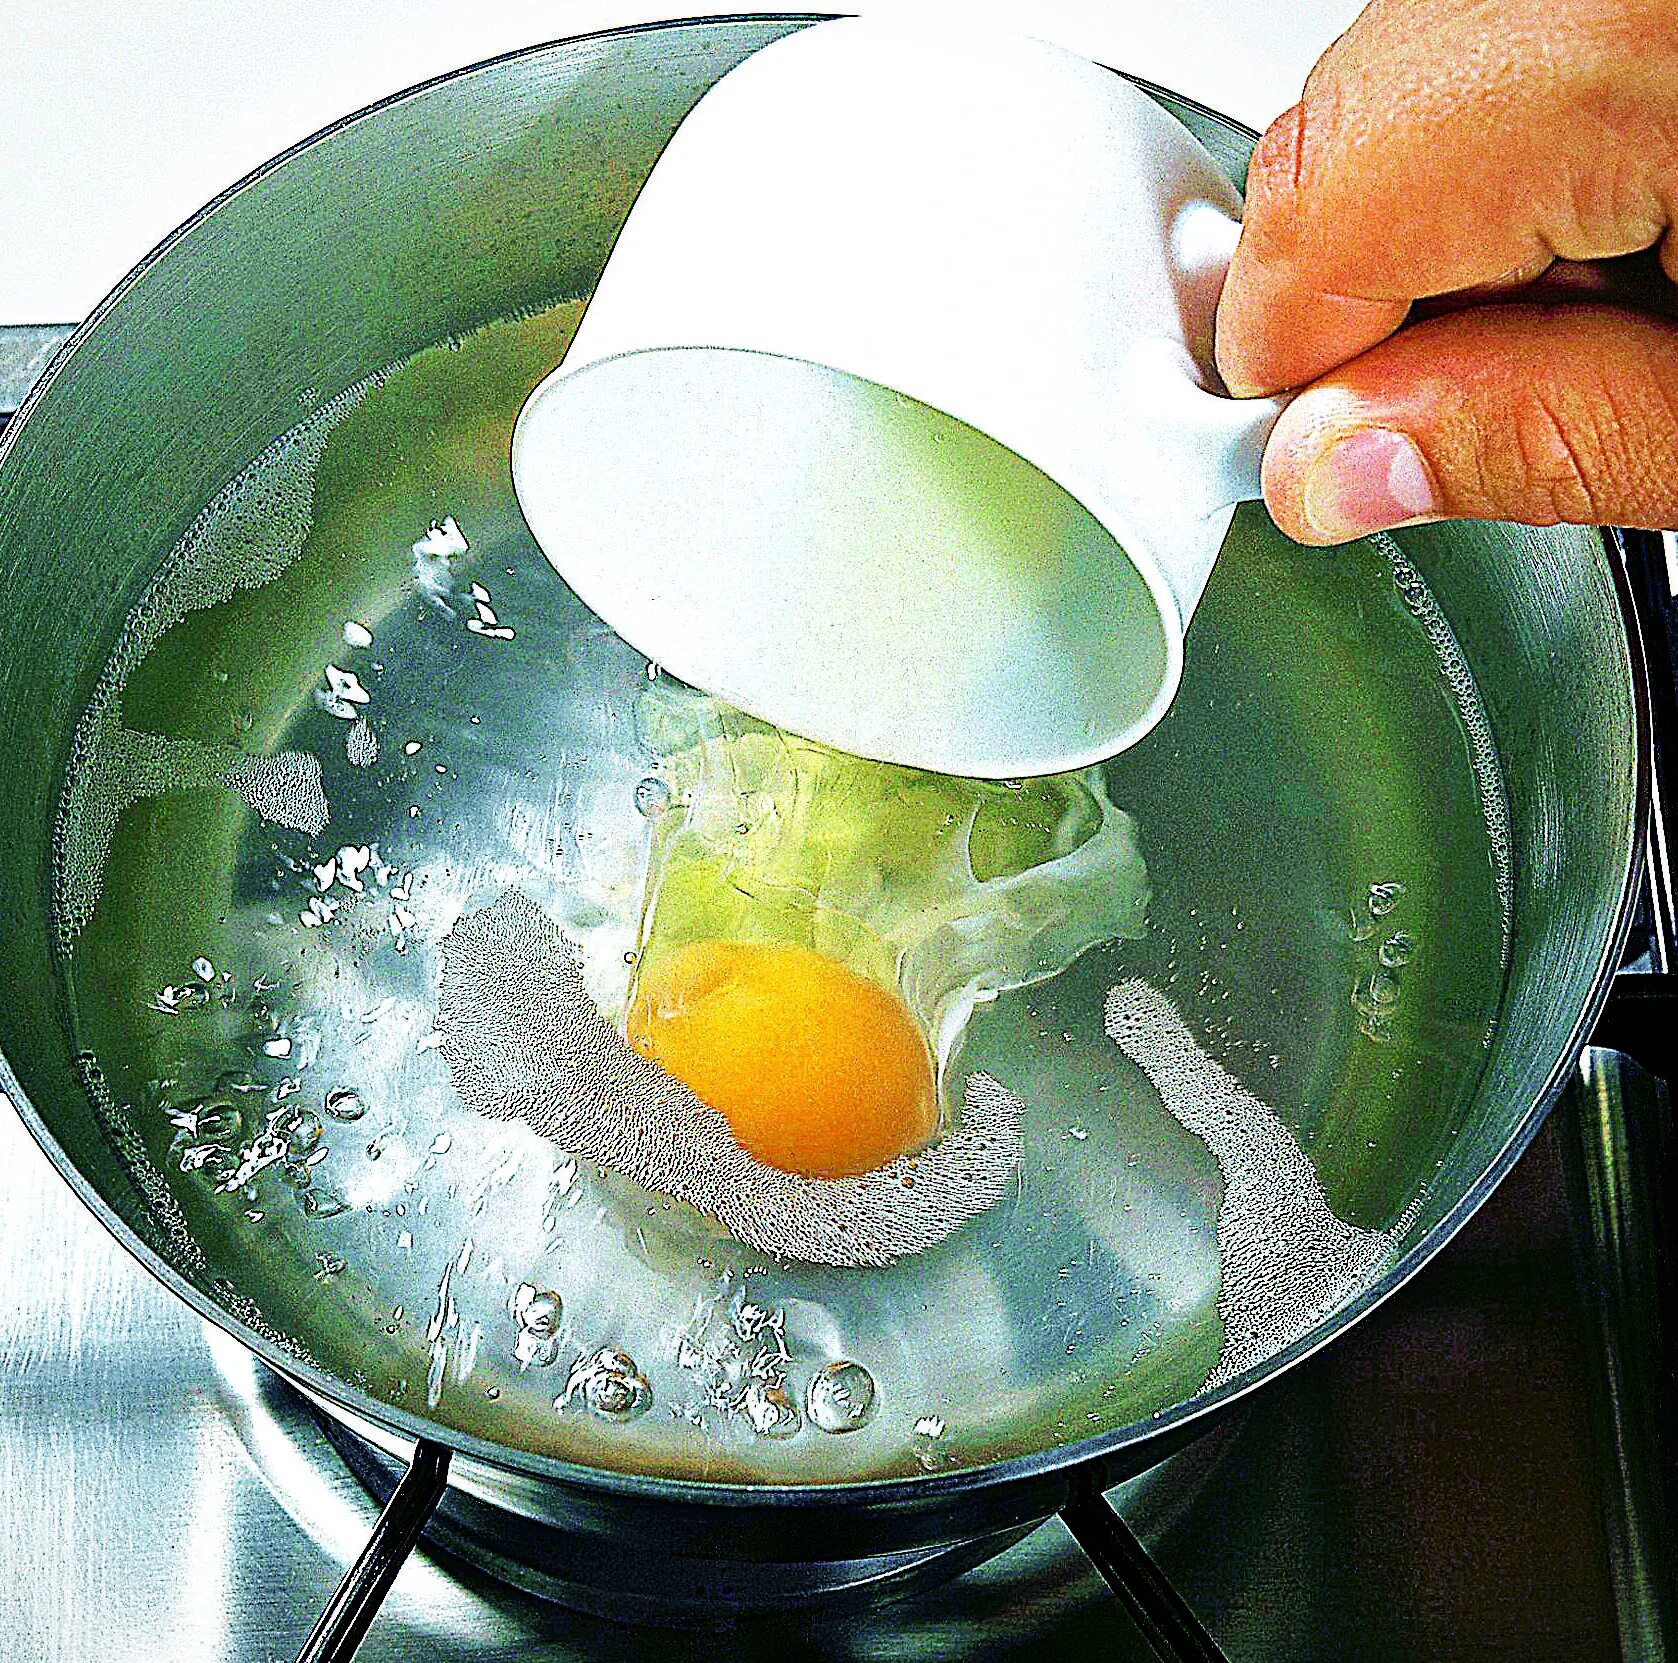 Яйца варятся в кипящей воде. Яйцо пашот в мешочке. Варка яиц пашот. Яйцо пашот в кипящую воду. Яйцо пашот в кастрюле.